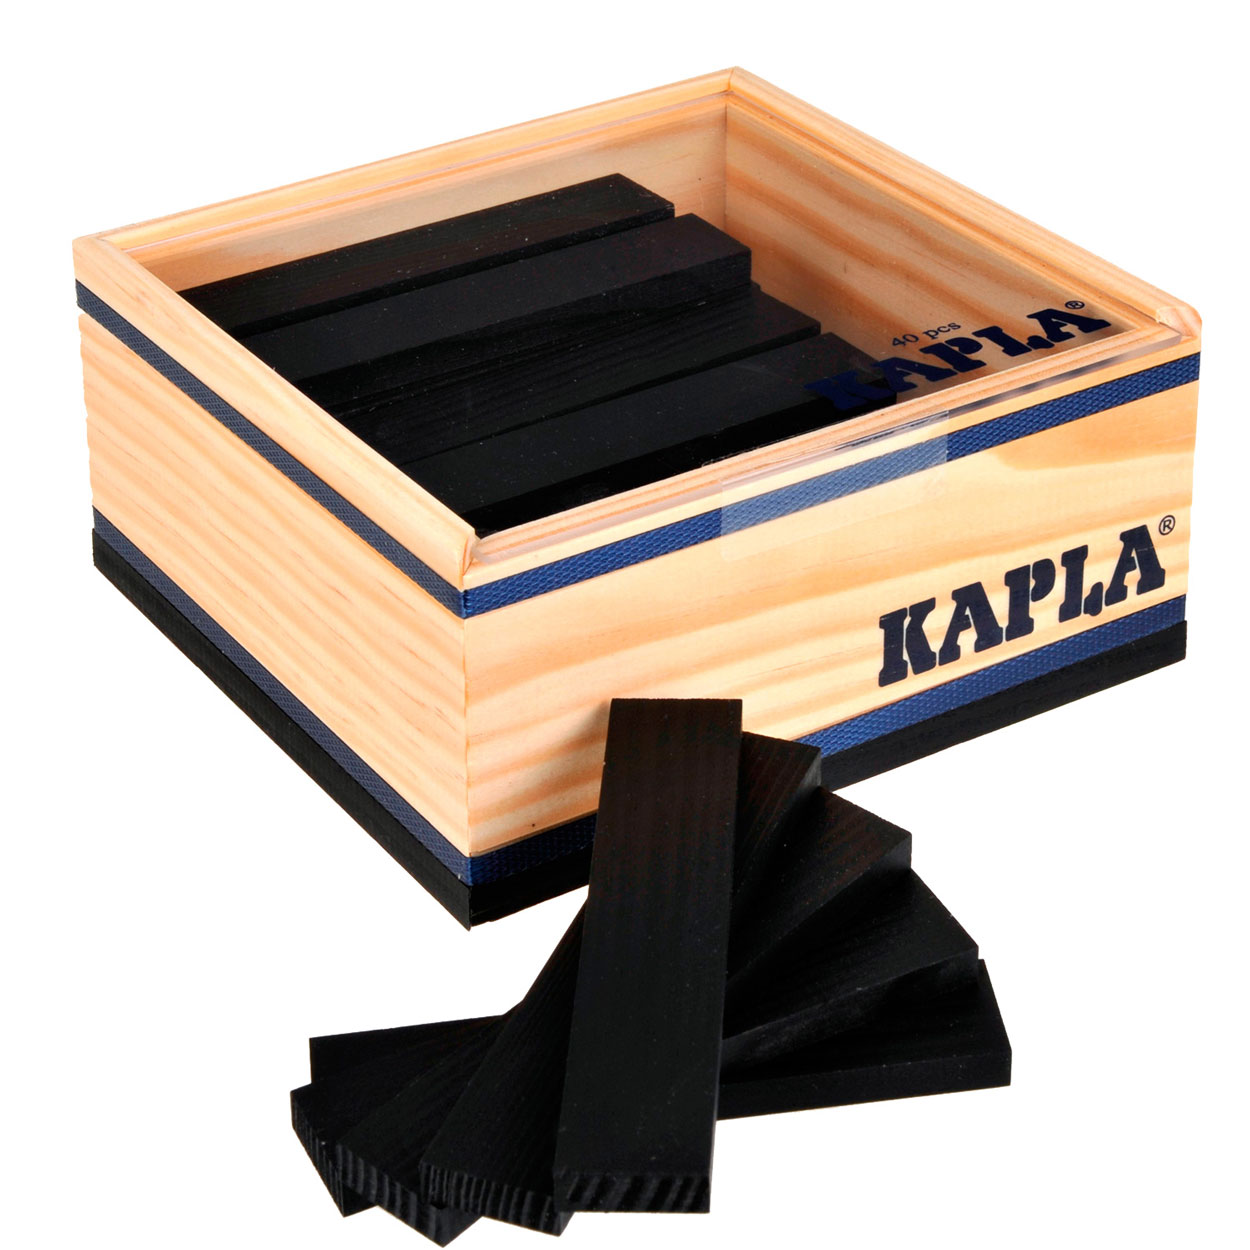 Kapla, 40 planches noires